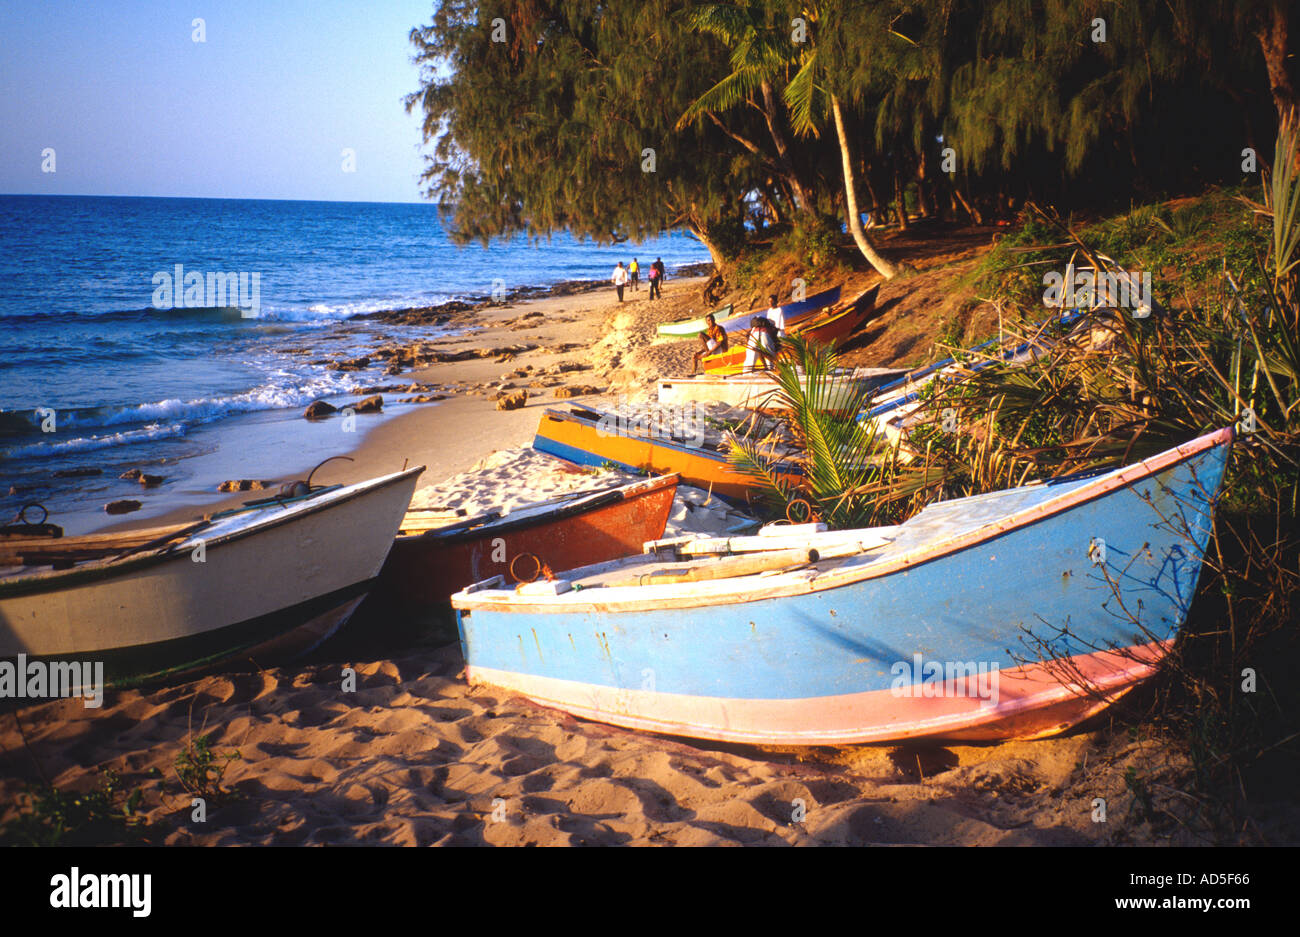 Bateaux sur la plage de Praia do Tofo Tofo près de Inhambane au Mozambique Afrique du Sud Banque D'Images